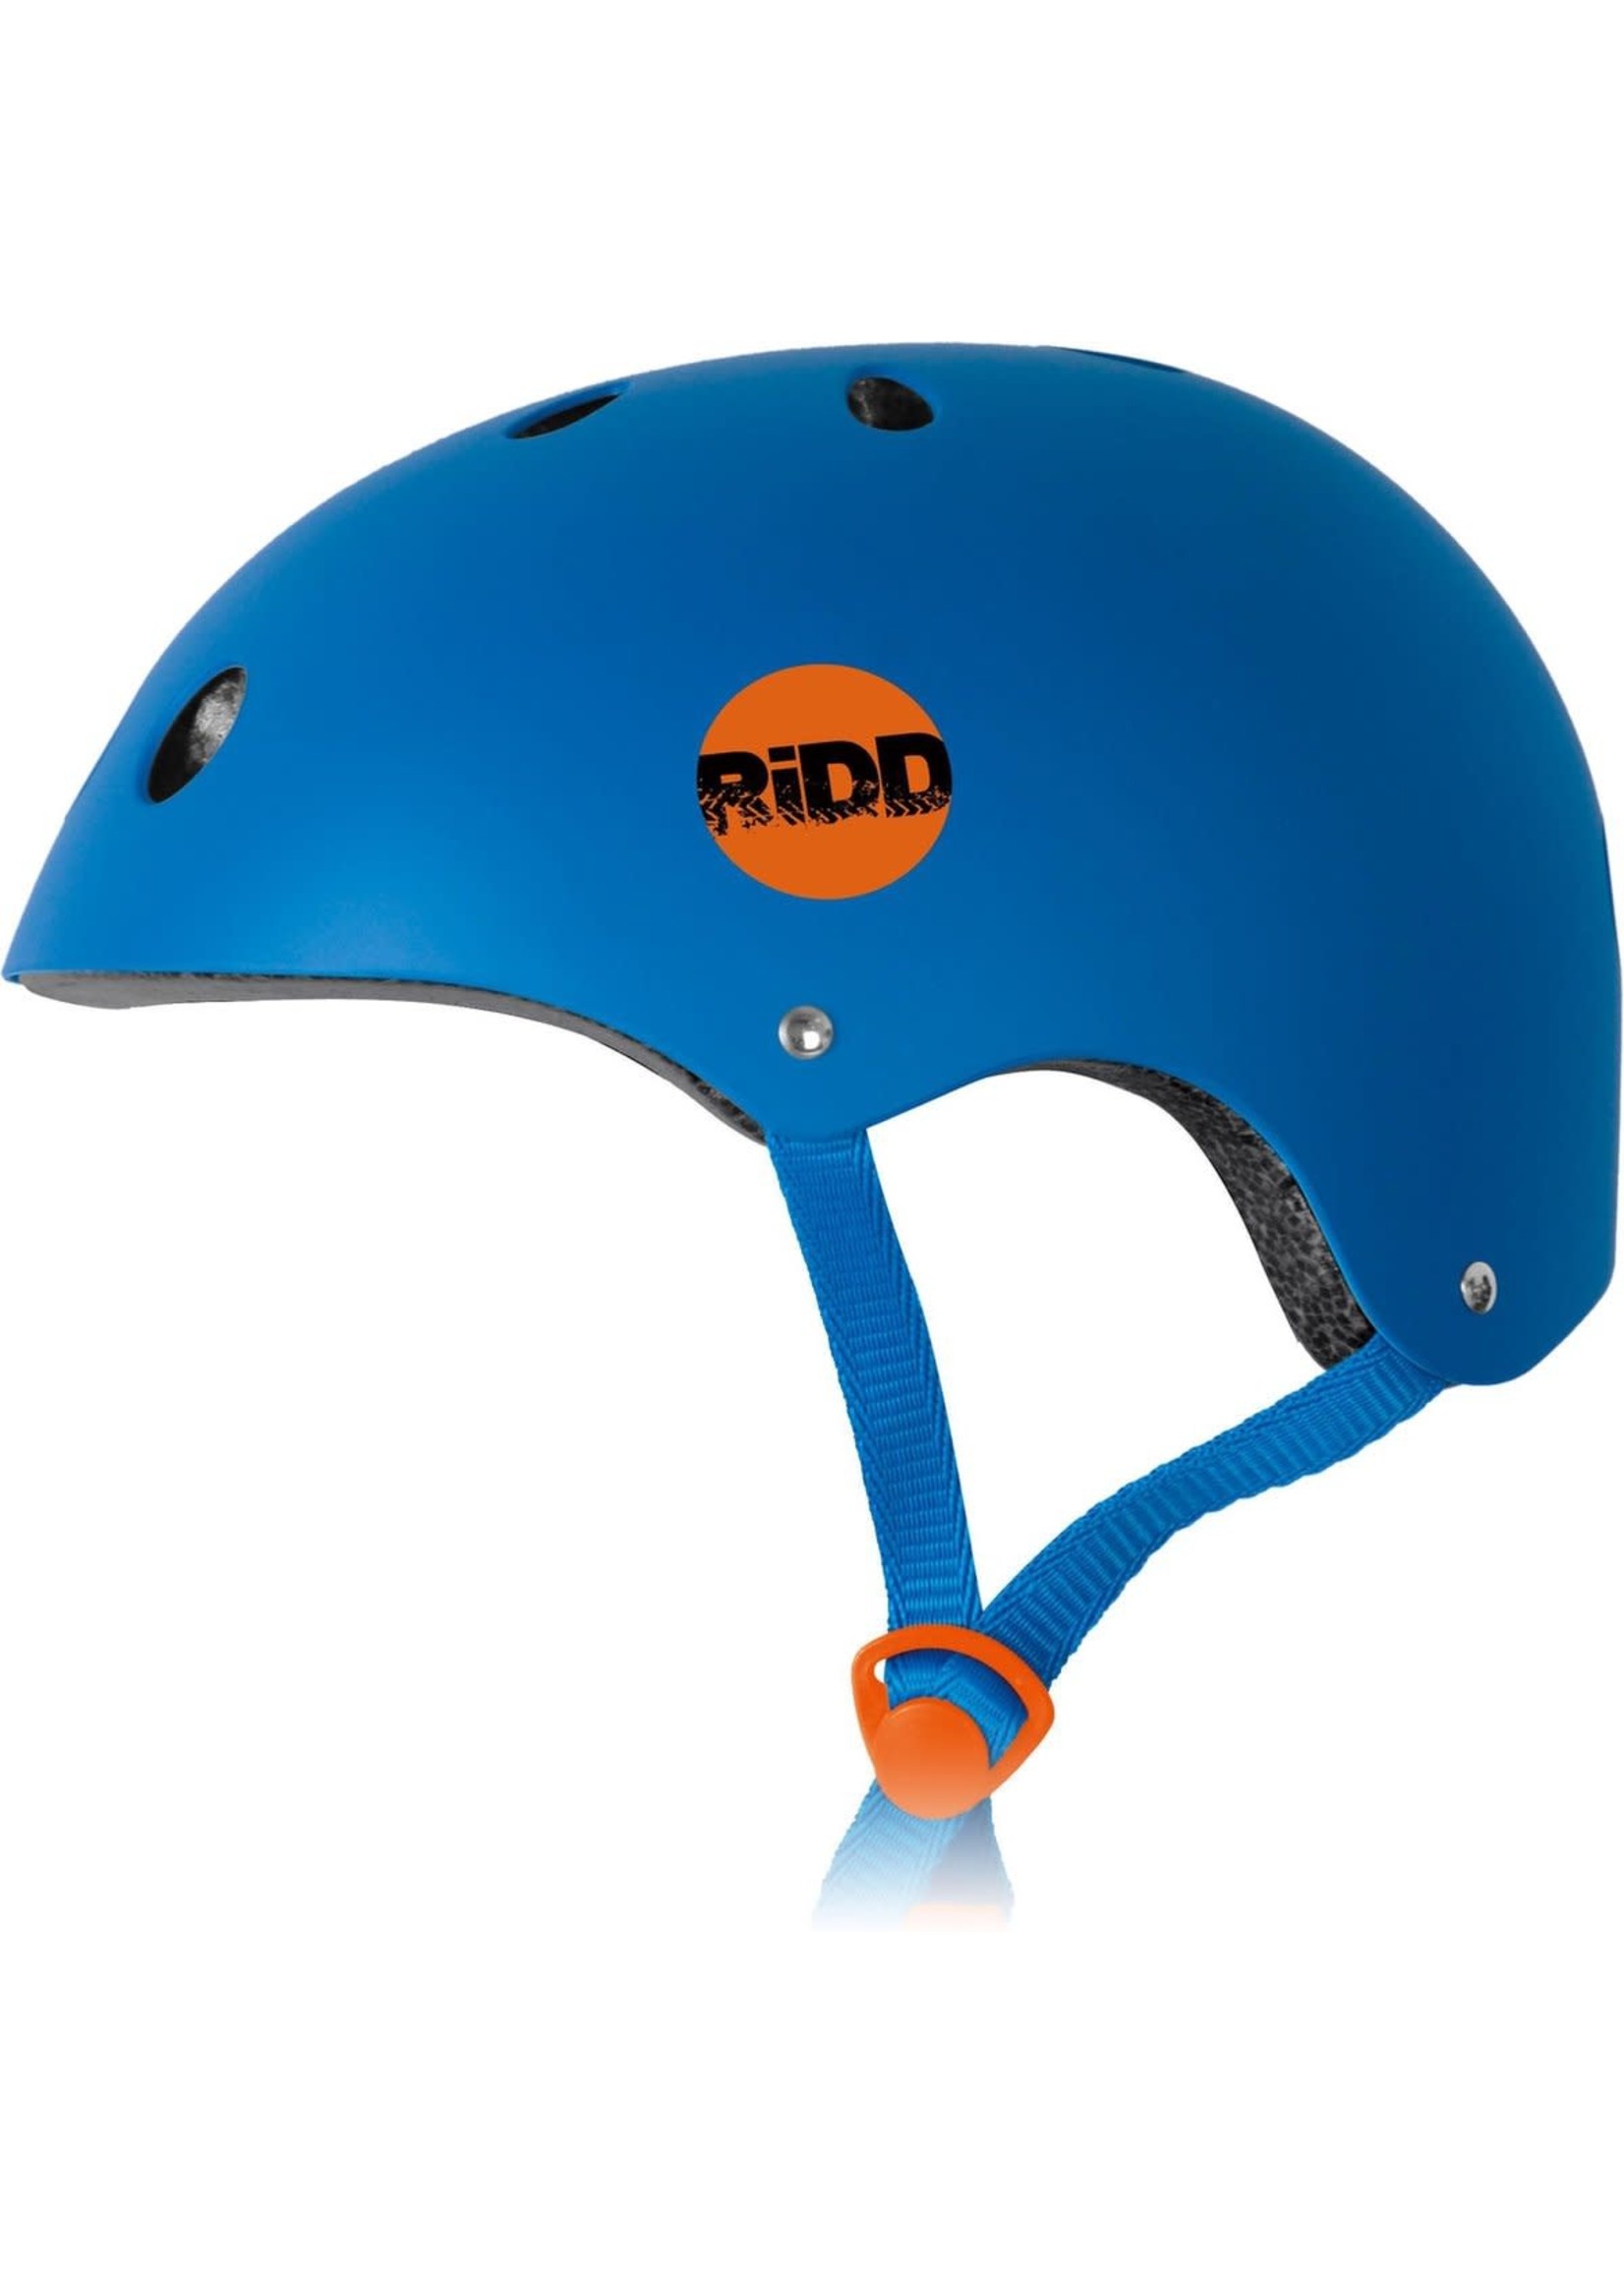 Ridd RiDD Skull Helmet - blue